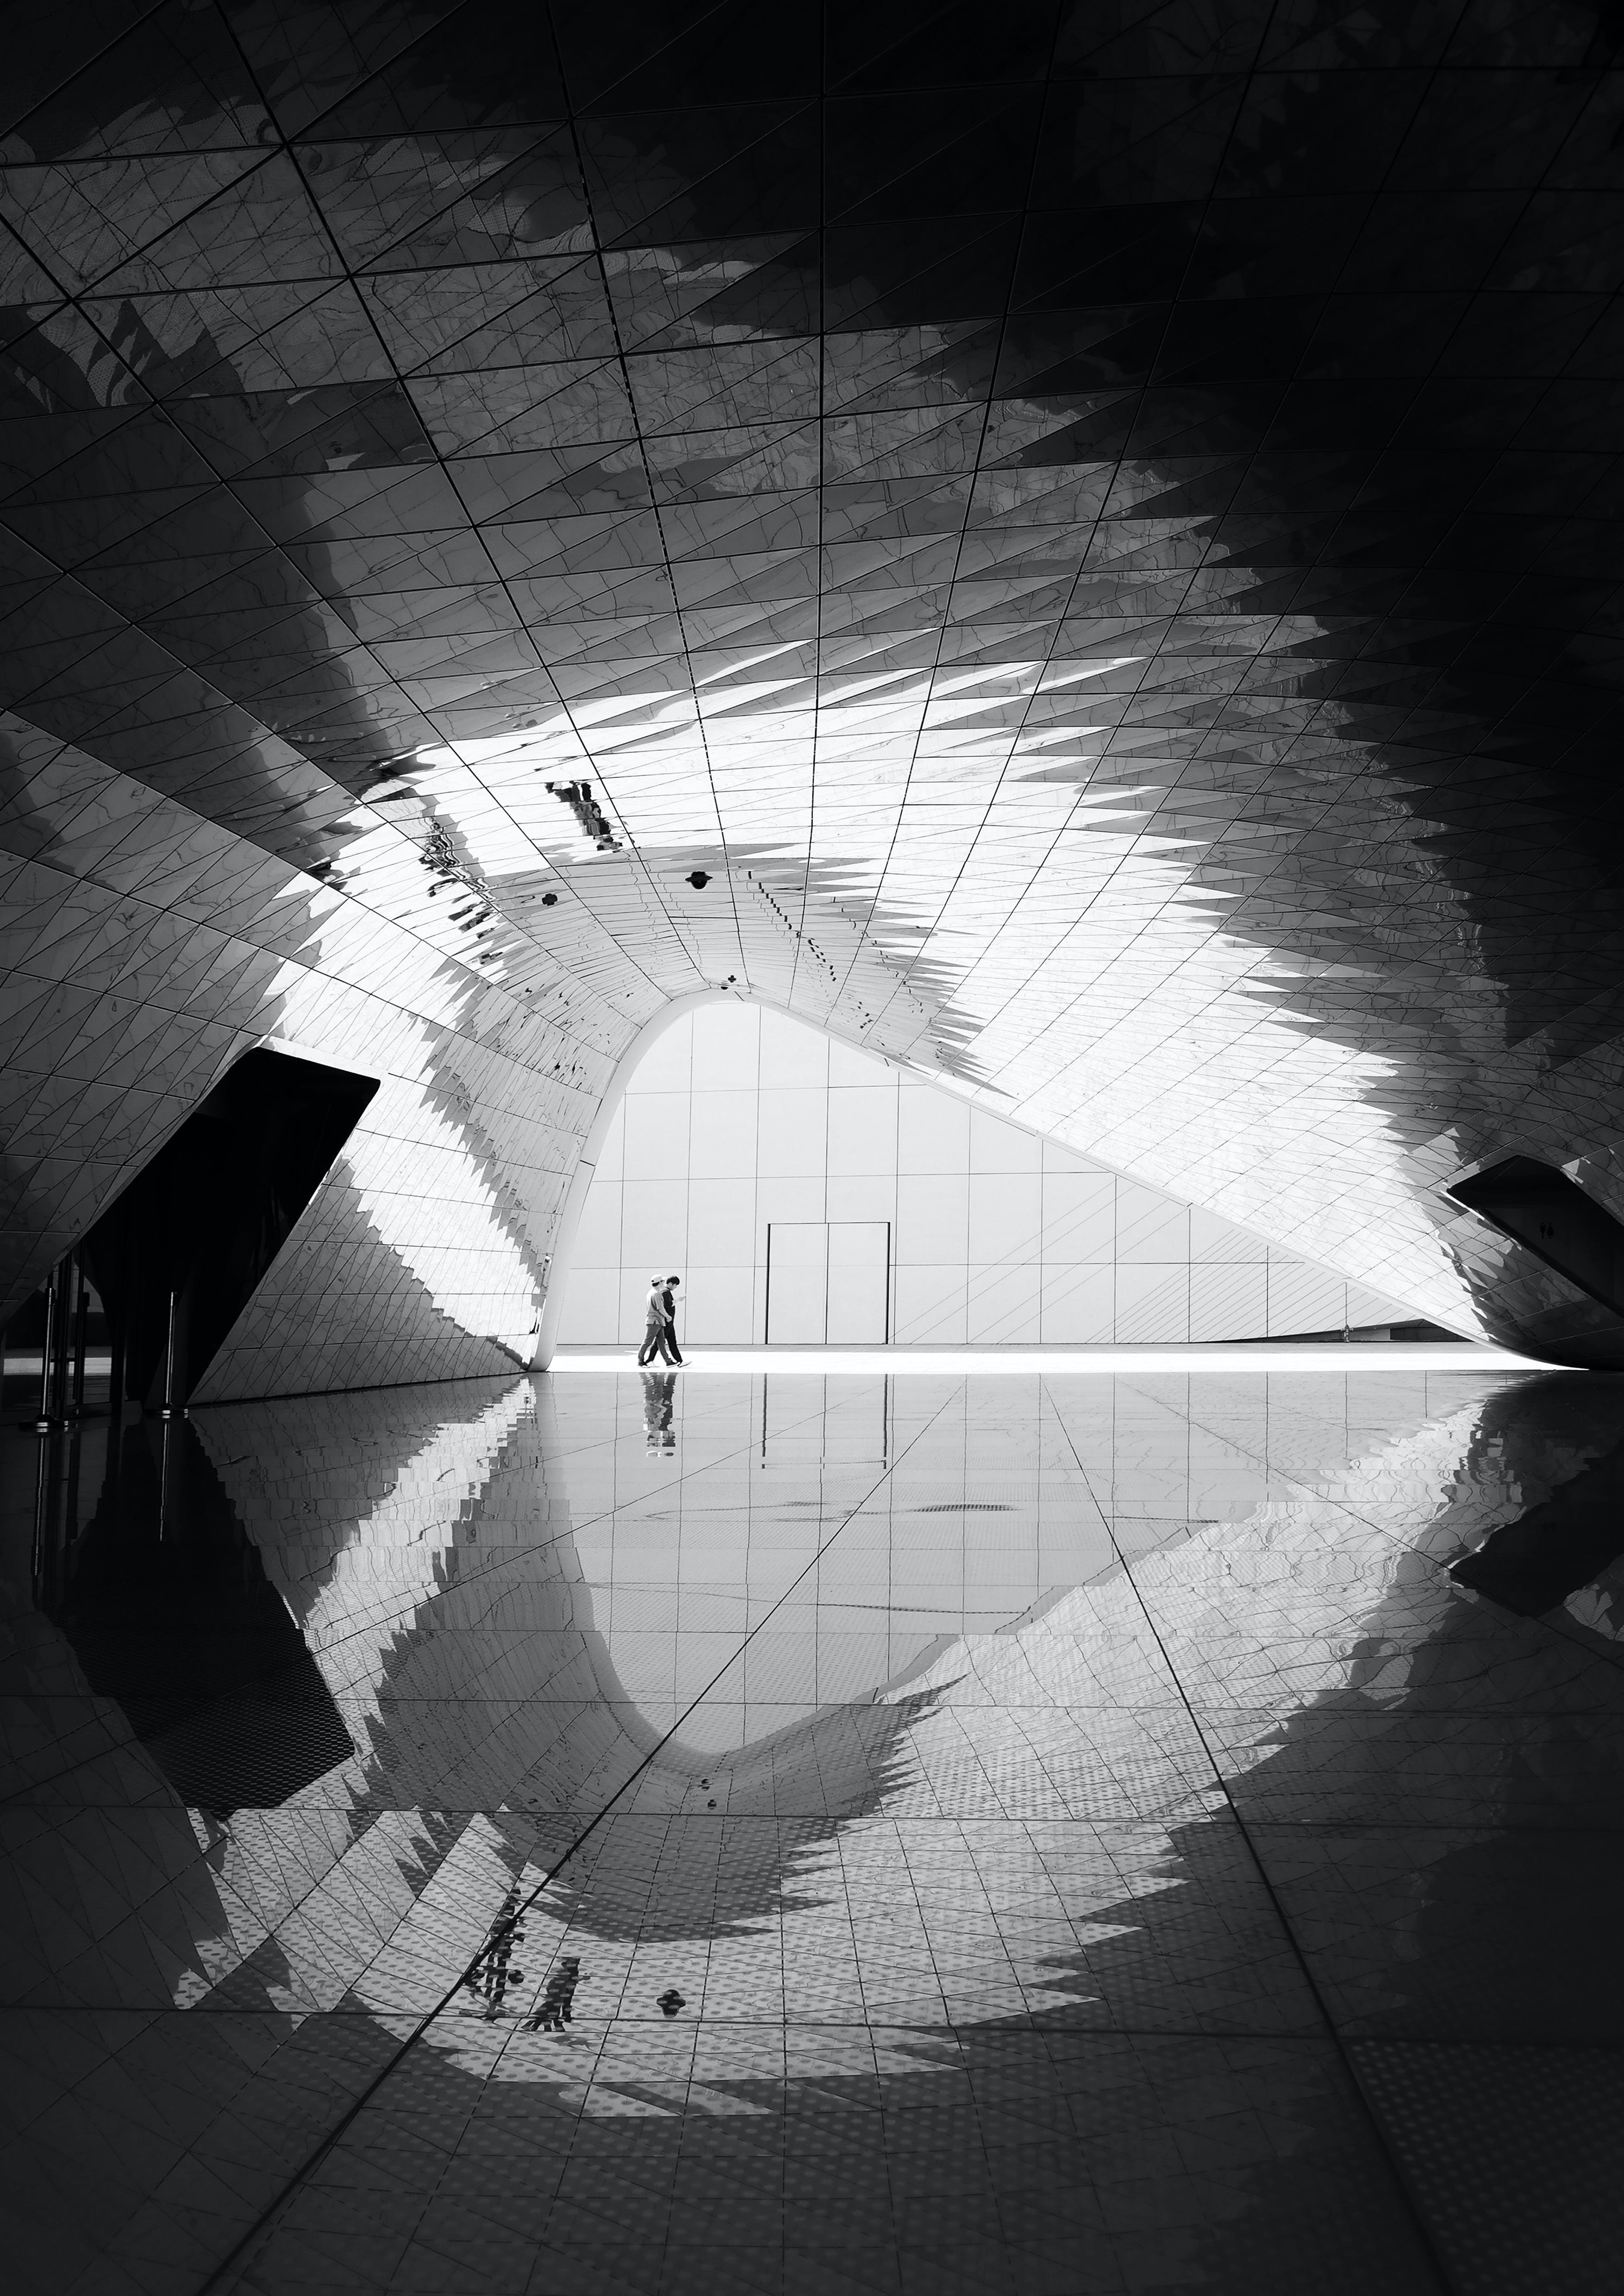 Bilde tatt i en moderne tunell i et bygg, to mennesker som går er fotografert